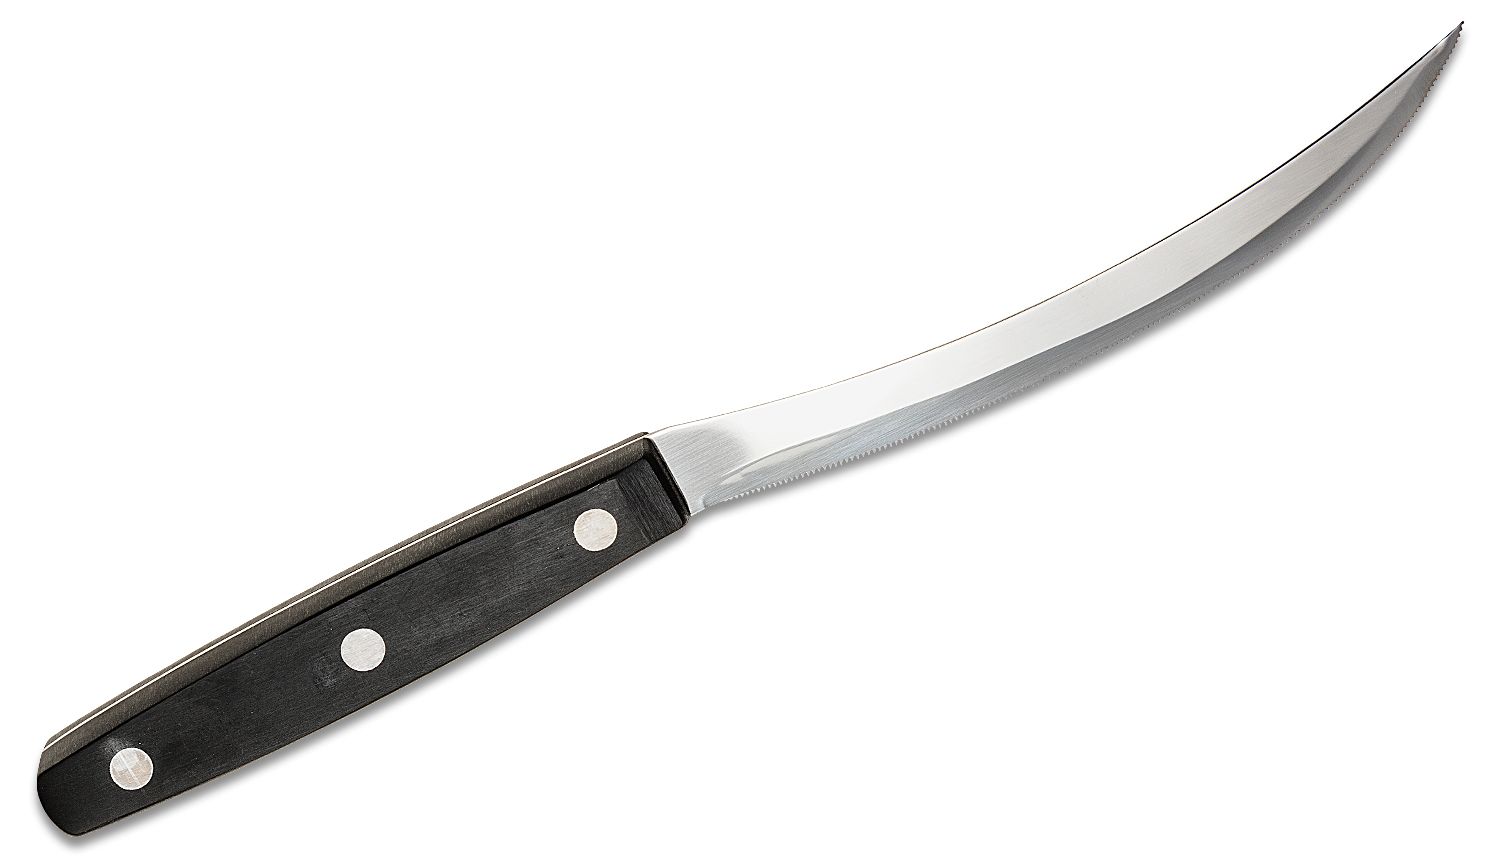 Boker Arbolito Classic 5" Blade, Black POM - KnifeCenter - 03BA5700 - Discontinued